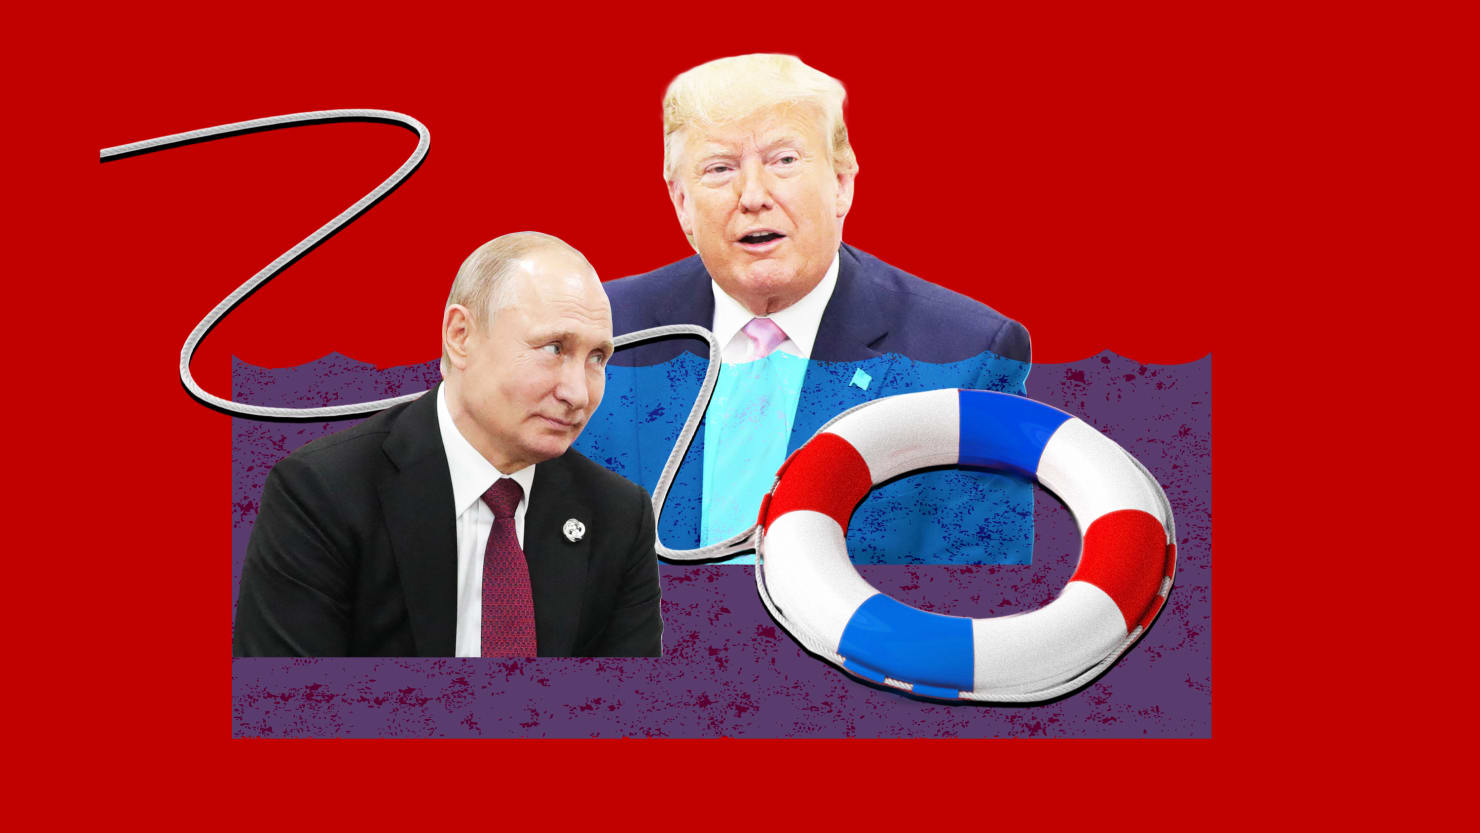 El equipo de Putin transmite una oferta demente para ‘ayudar’ a Estados Unidos y ‘salvar’ a Trump